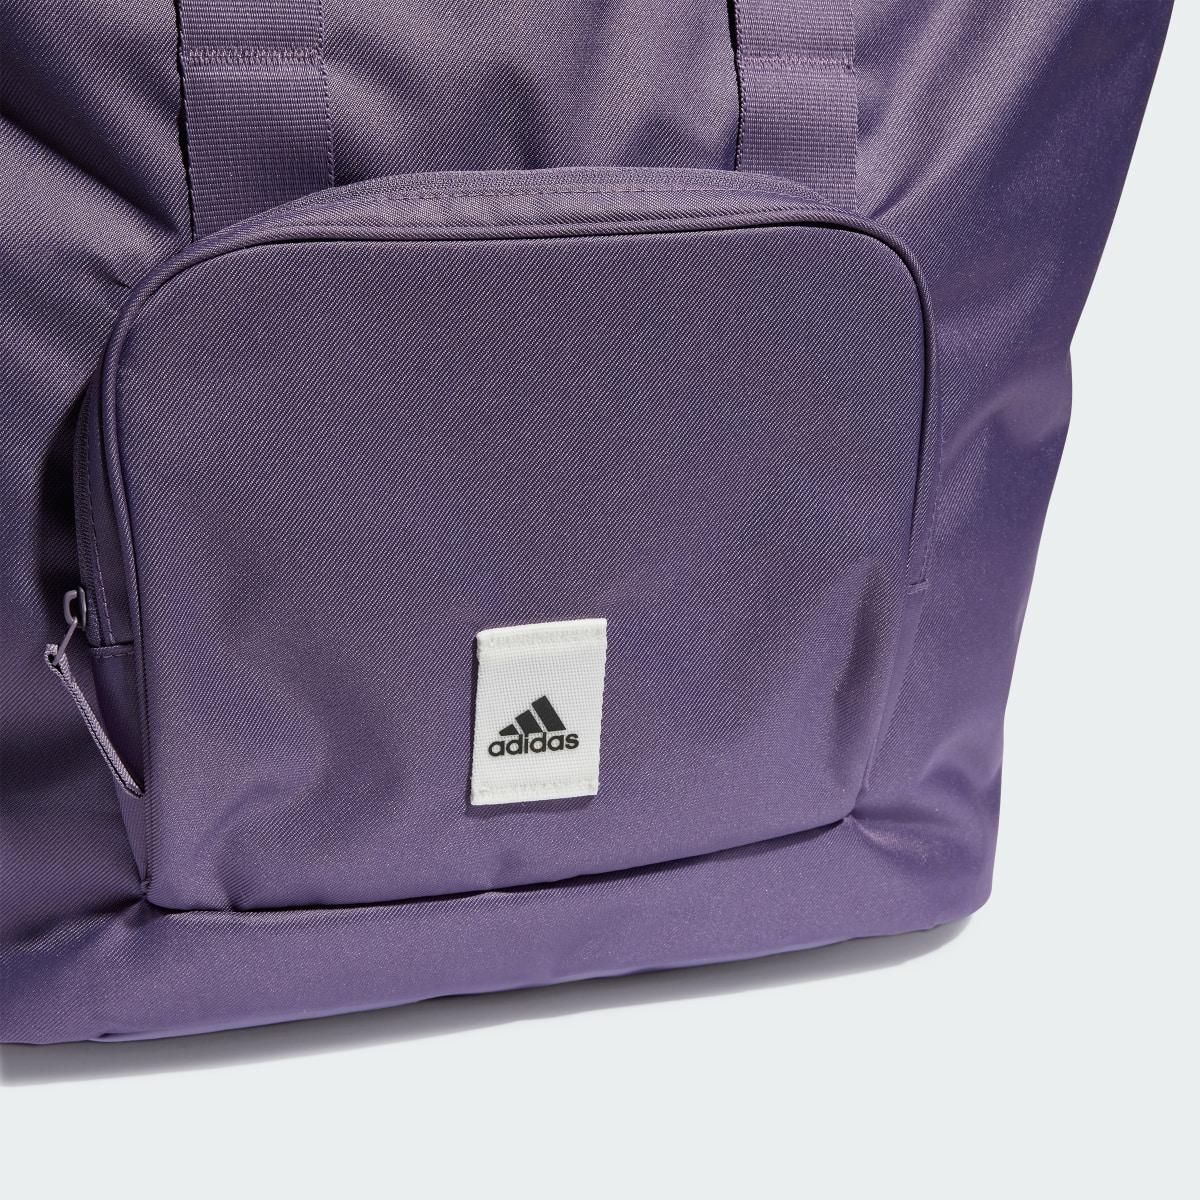 Adidas Prime Tote Bag. 6